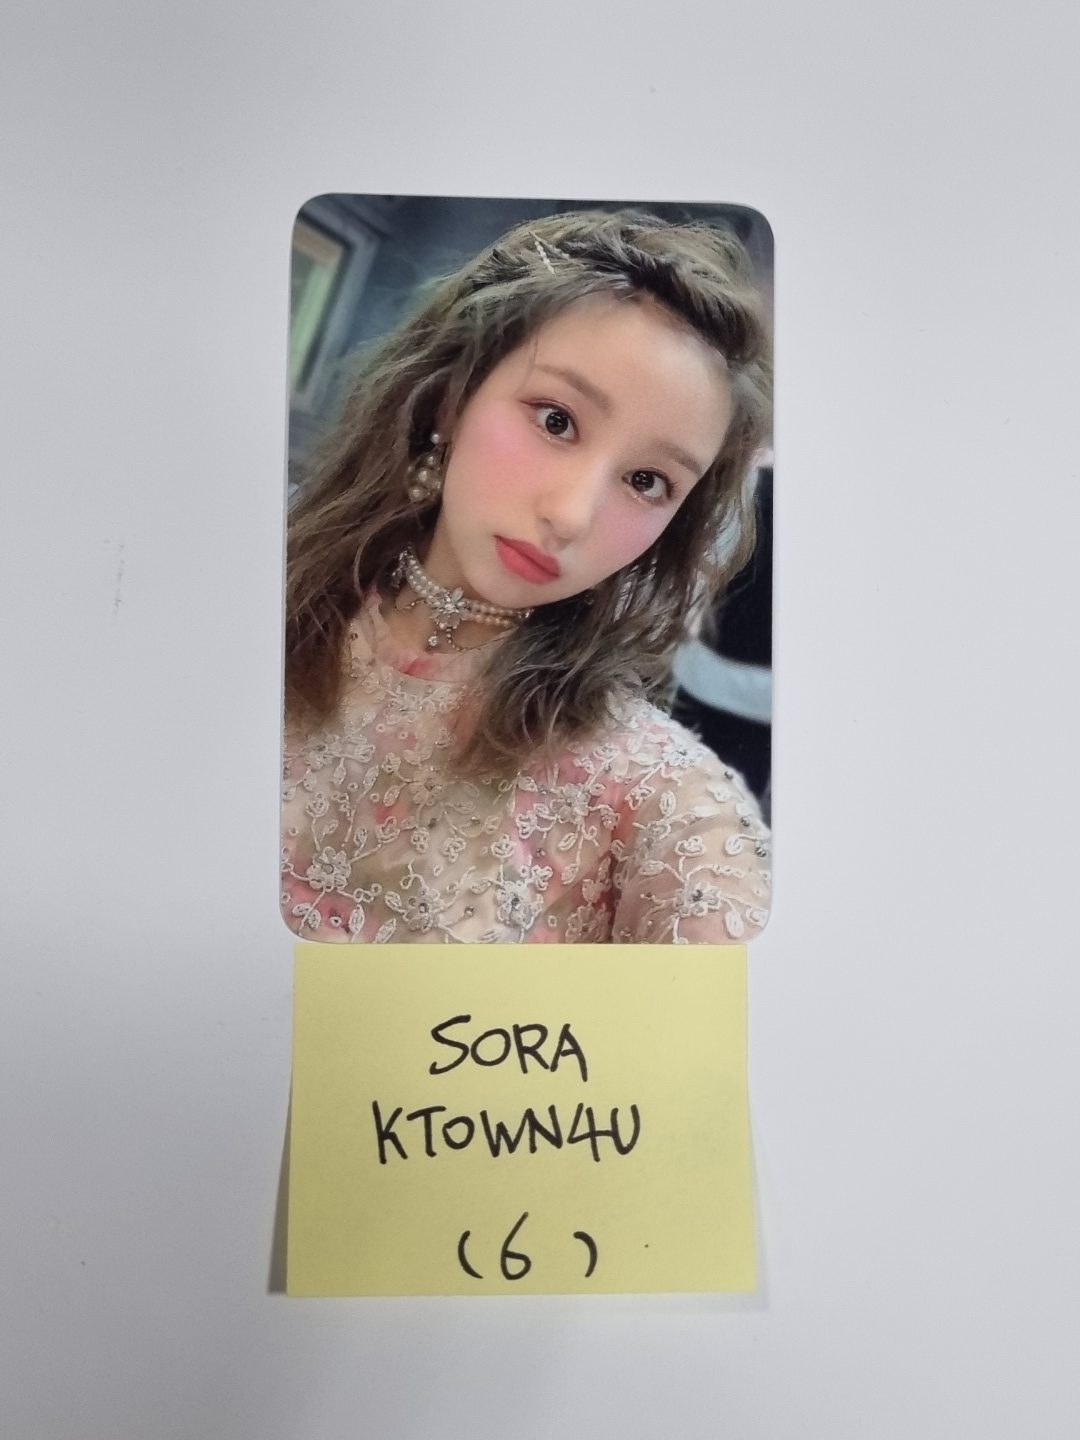 Woo!ah! 'Wish' - Ktown4u Pre-order Benefit Photocard